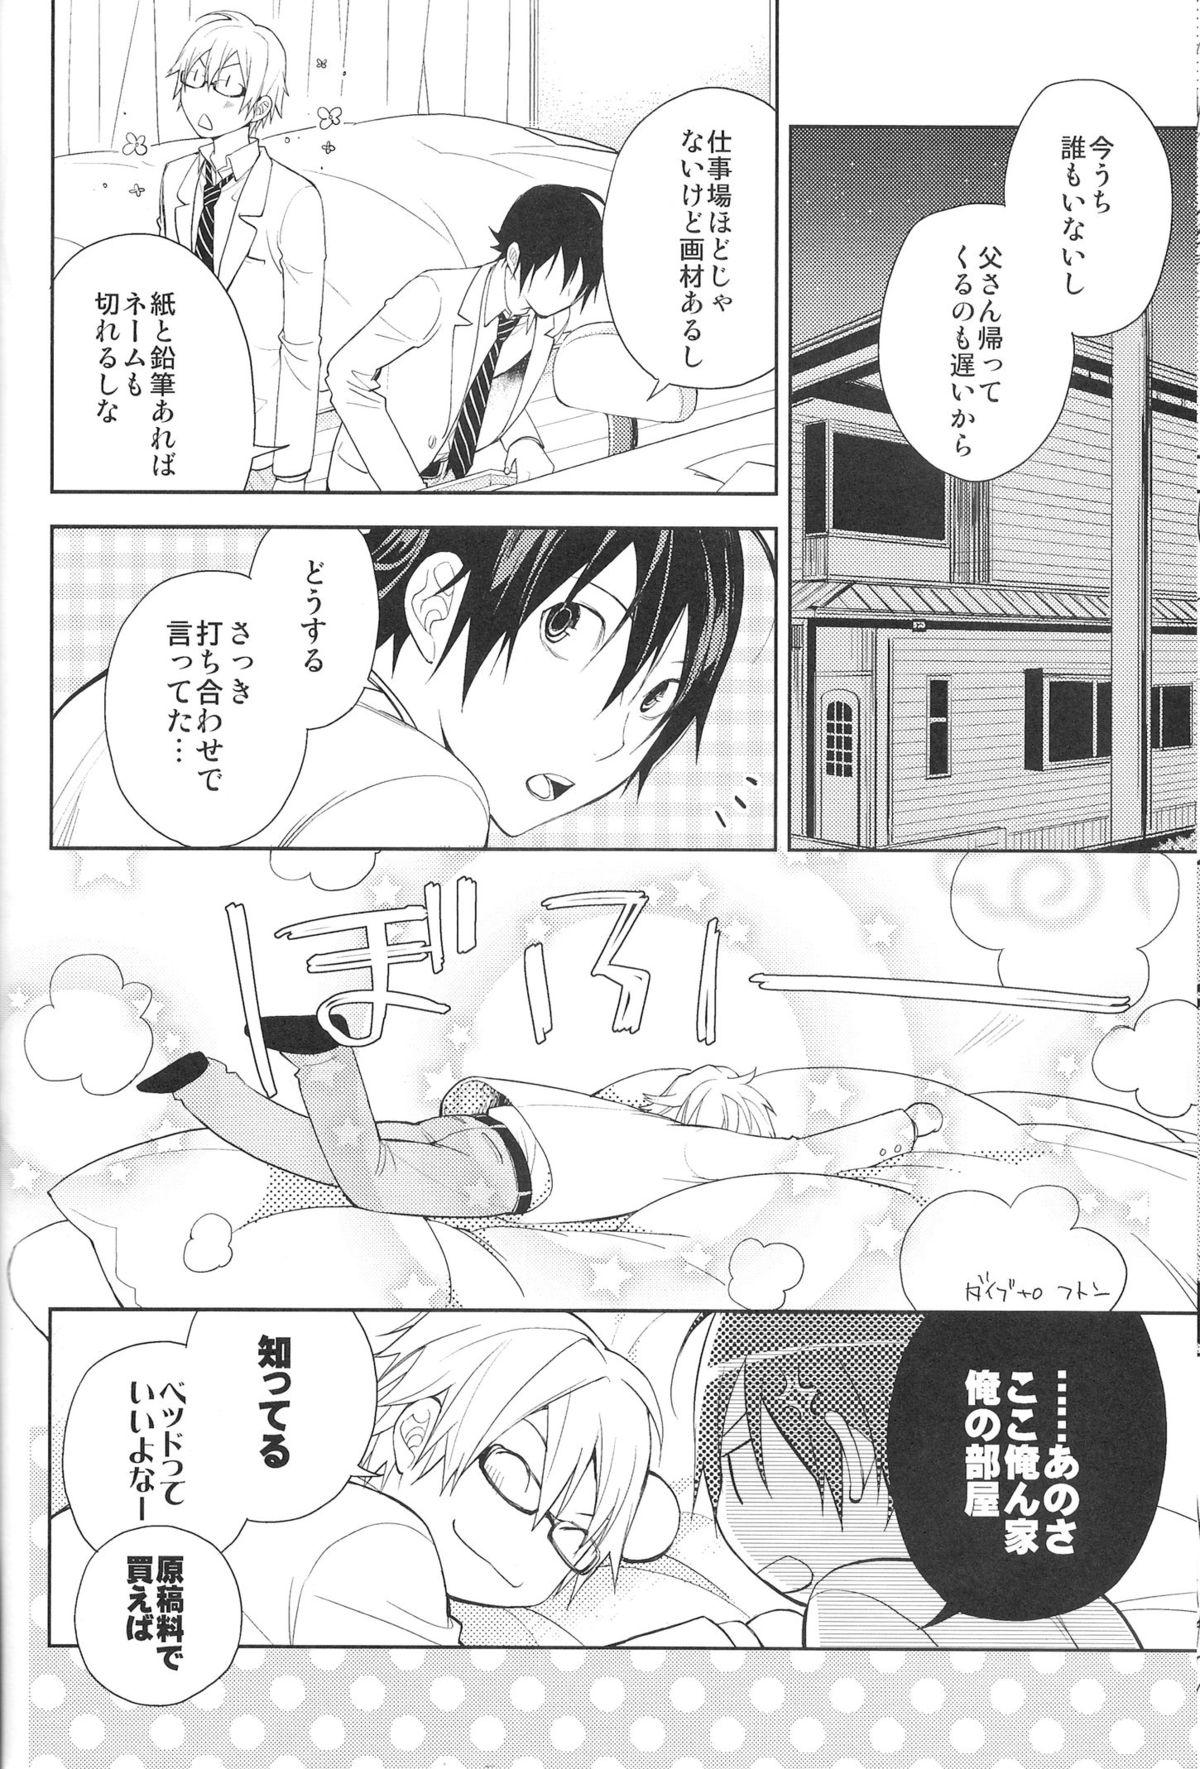 Morrita Aikata to boku no kankei - Bakuman Breast - Page 7